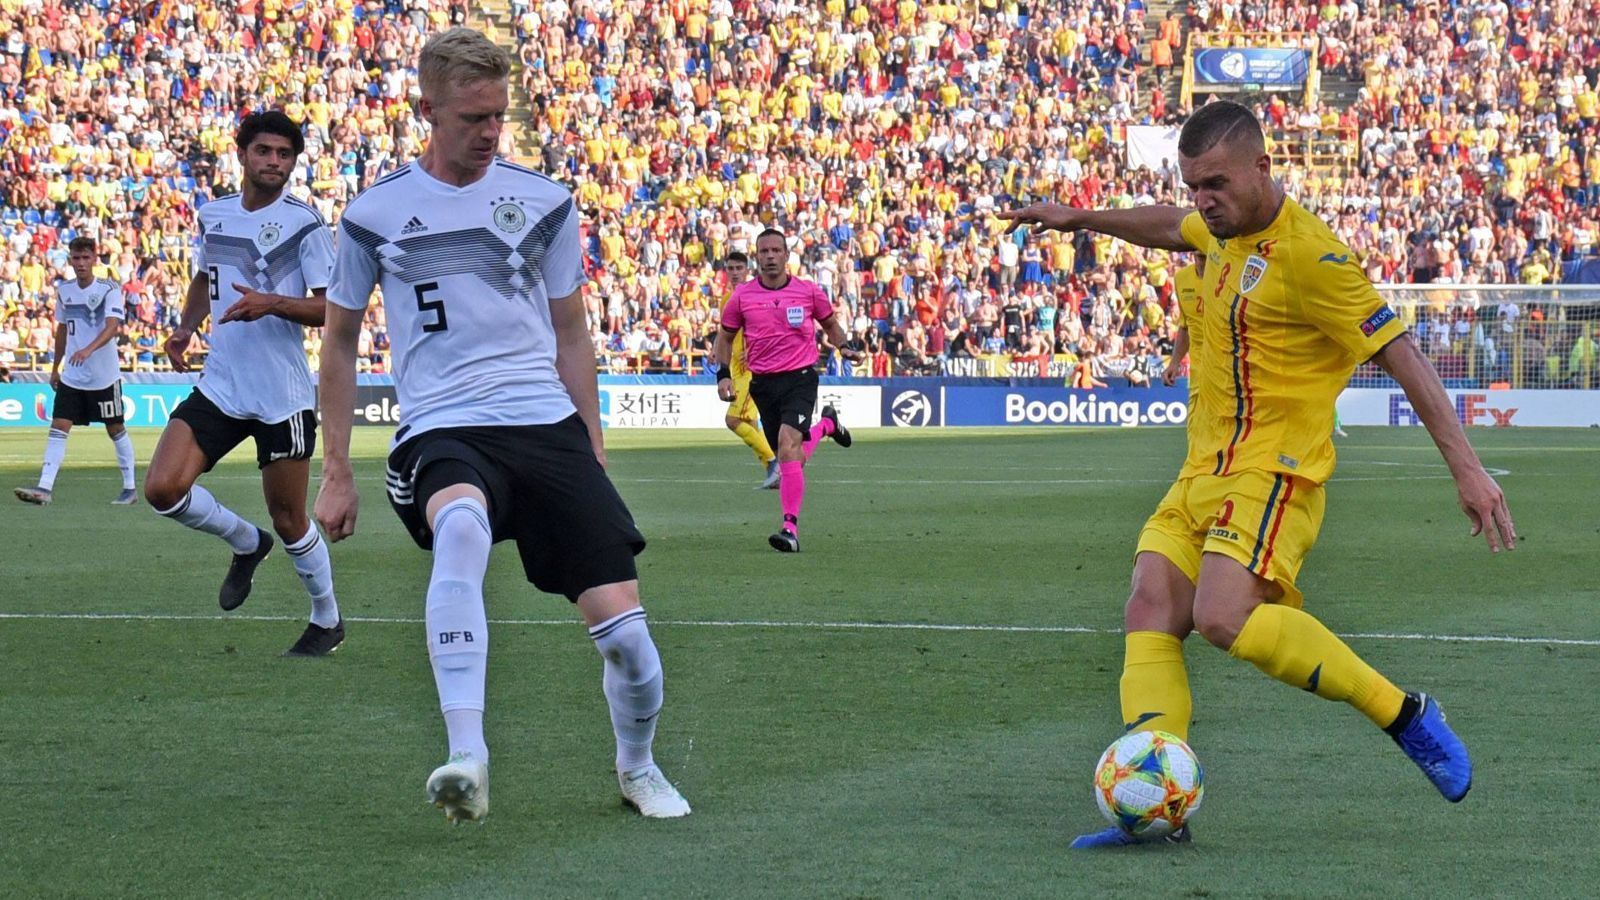 
                <strong>Rumänien: in bester Erinnerung </strong><br>
                Die Rumänen sind den DFB-Junioren noch in sehr guter Erinnerung. Im Halbfinale der U21-EM 2019 in Italien und San Marino trafen beide Teams zuletzt aufeinander und lieferten sich eine hart umkämpfte Partie, die die deutsche U21-Nationalmannschaft am Ende mit 4:2 für sich entschied und so ins Endspiel einzog, das am Ende mit 1:2 gegen Spanien verloren ging.
              